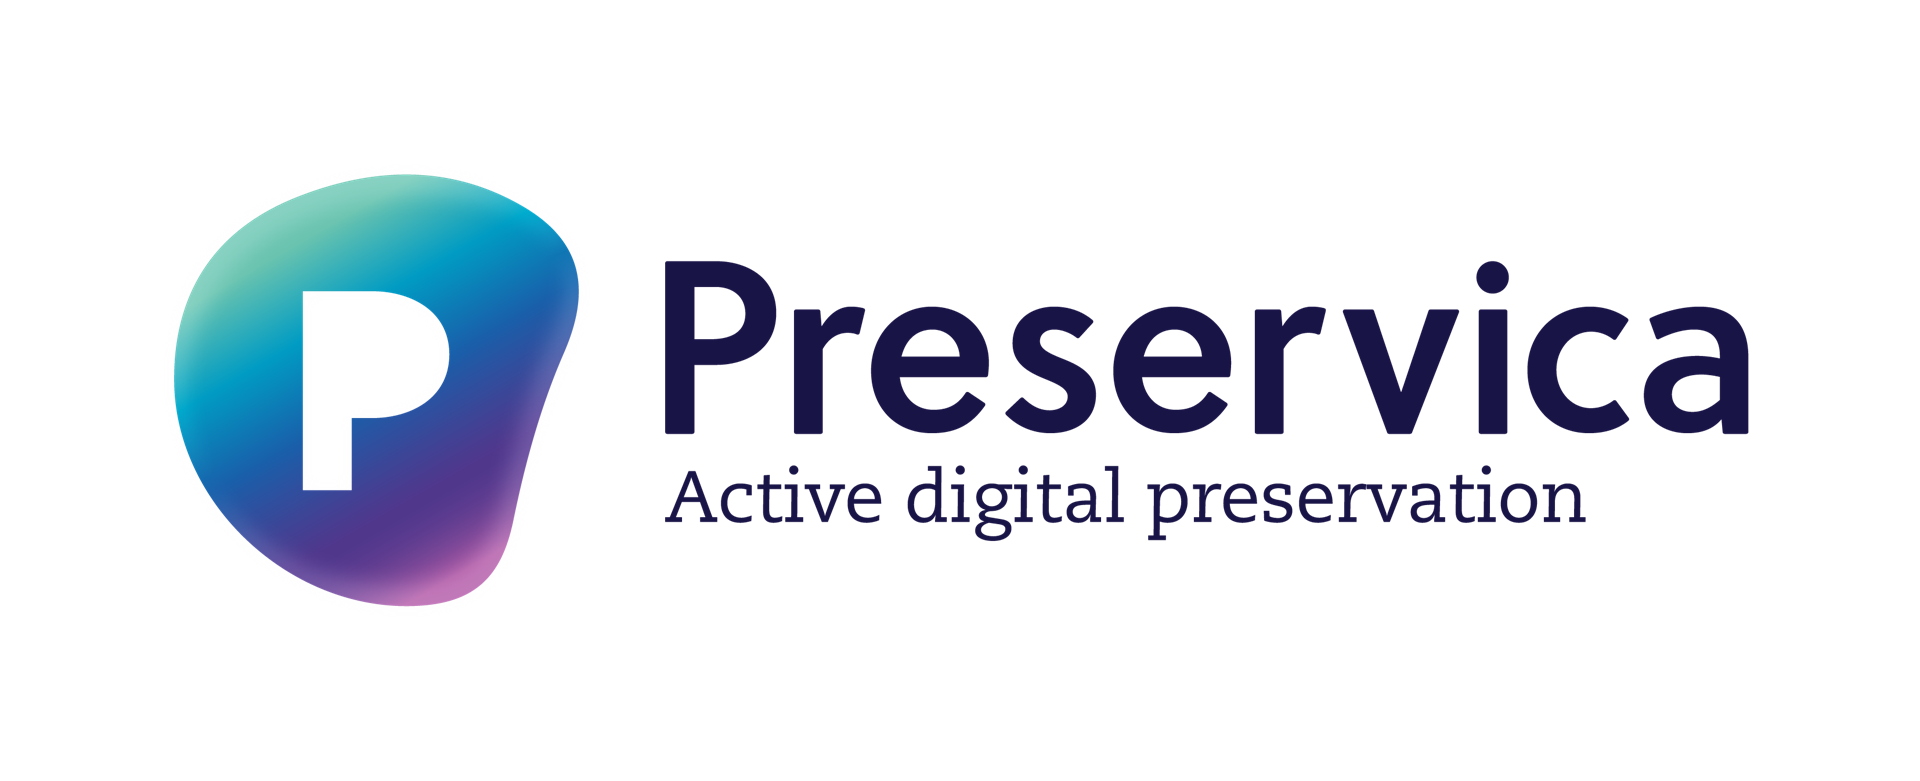 Preservica Active digital preservation logo